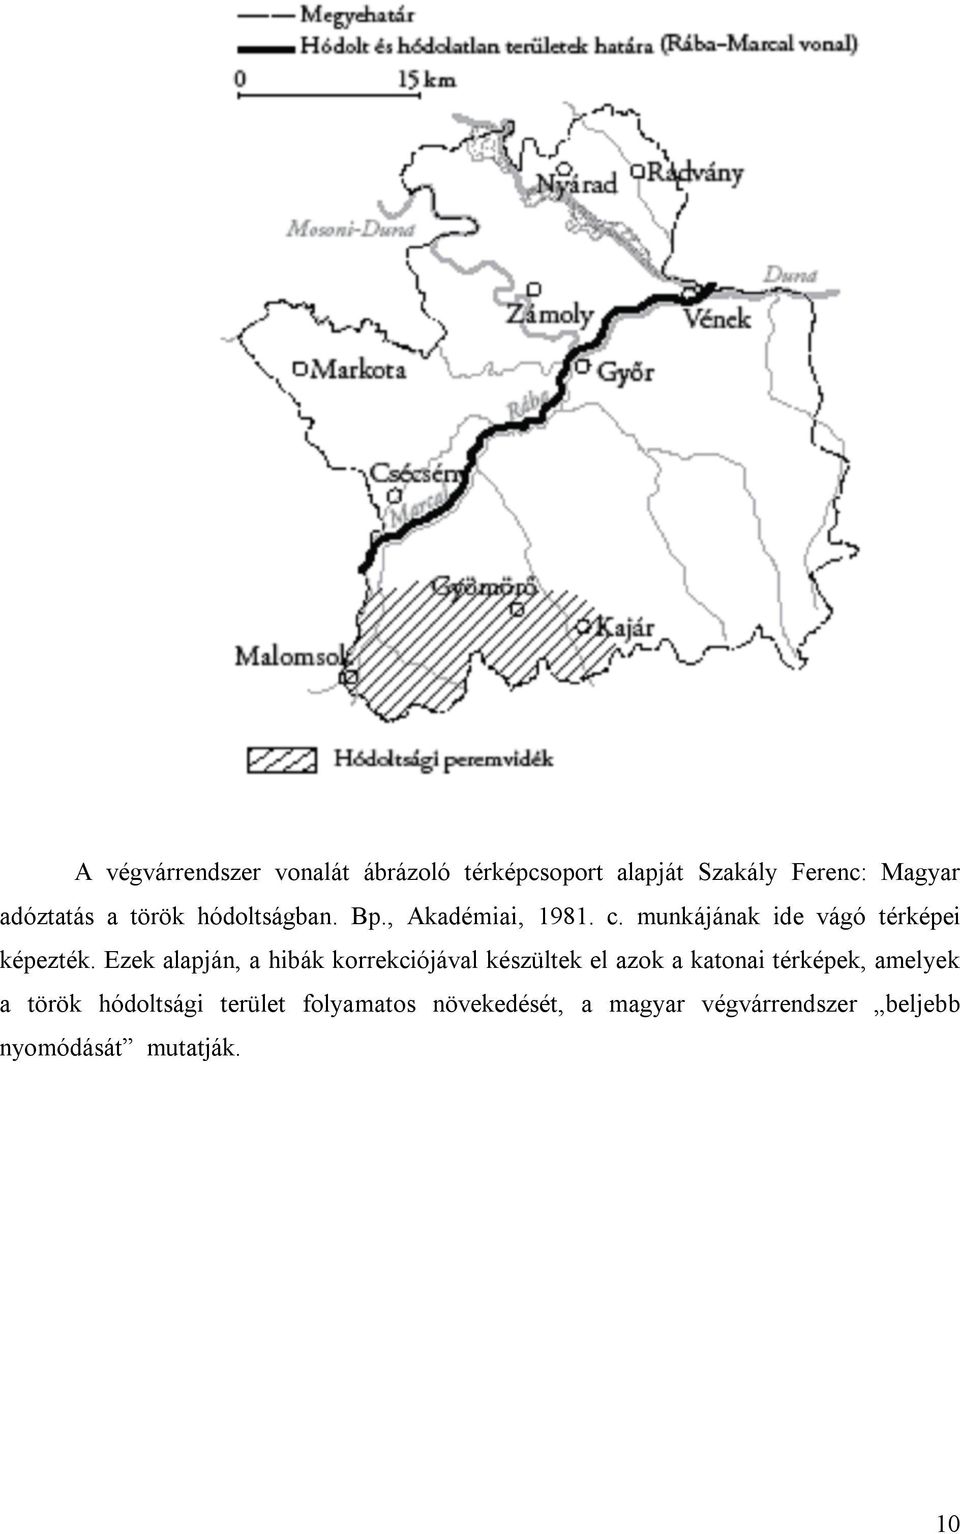 Ezek alapján, a hibák korrekciójával készültek el azok a katonai térképek, amelyek a török